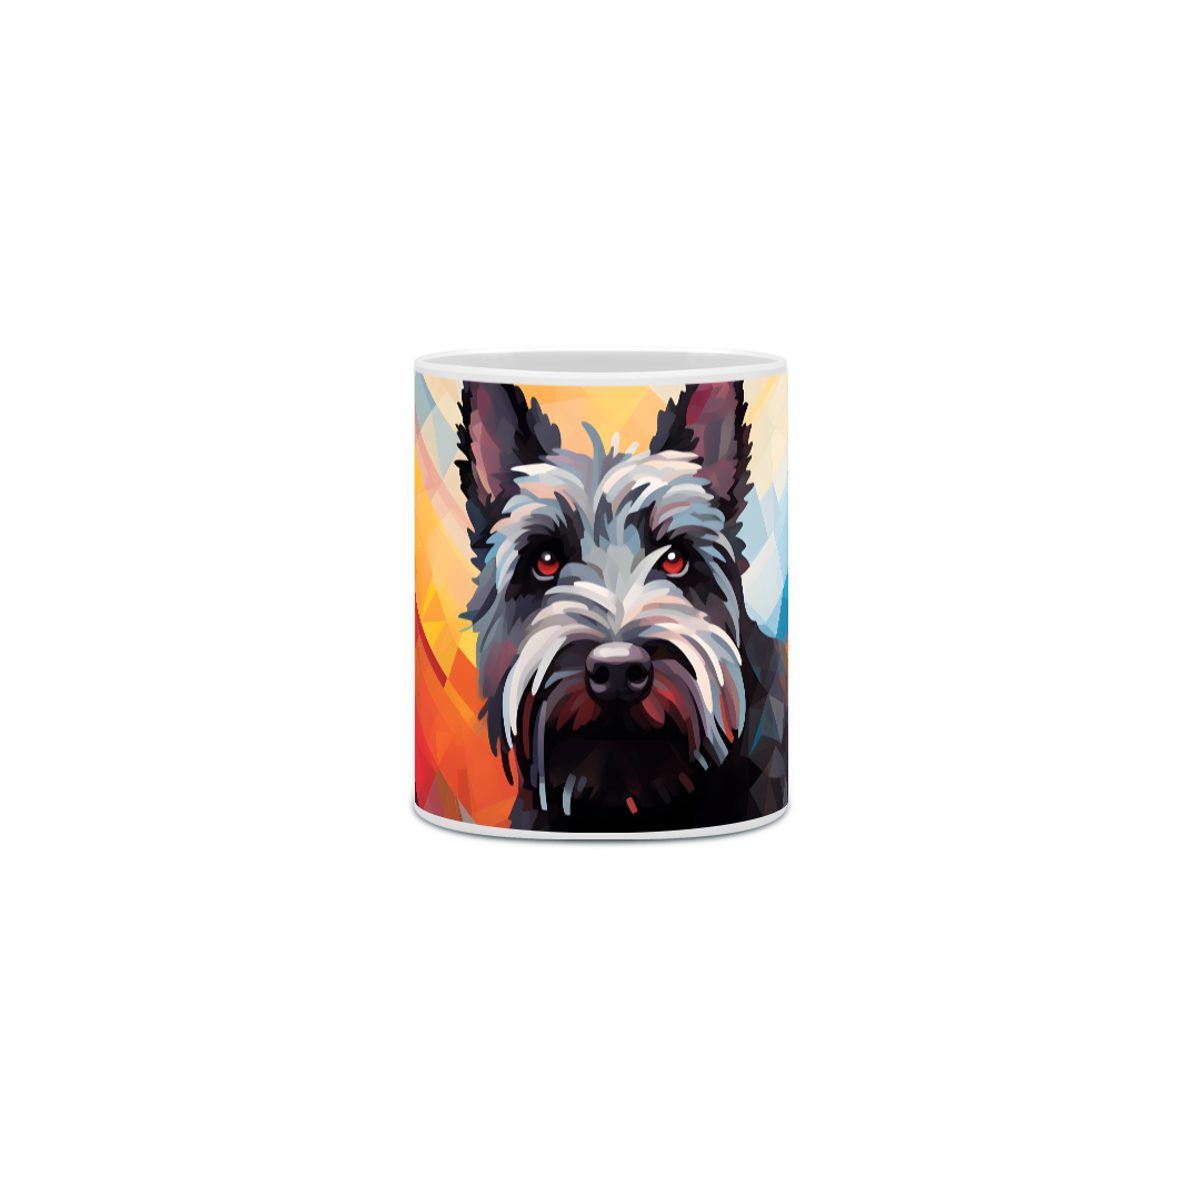 Nome do produto: Caneca Scottish Terrier com Arte Digital - #Autenticidade 0013